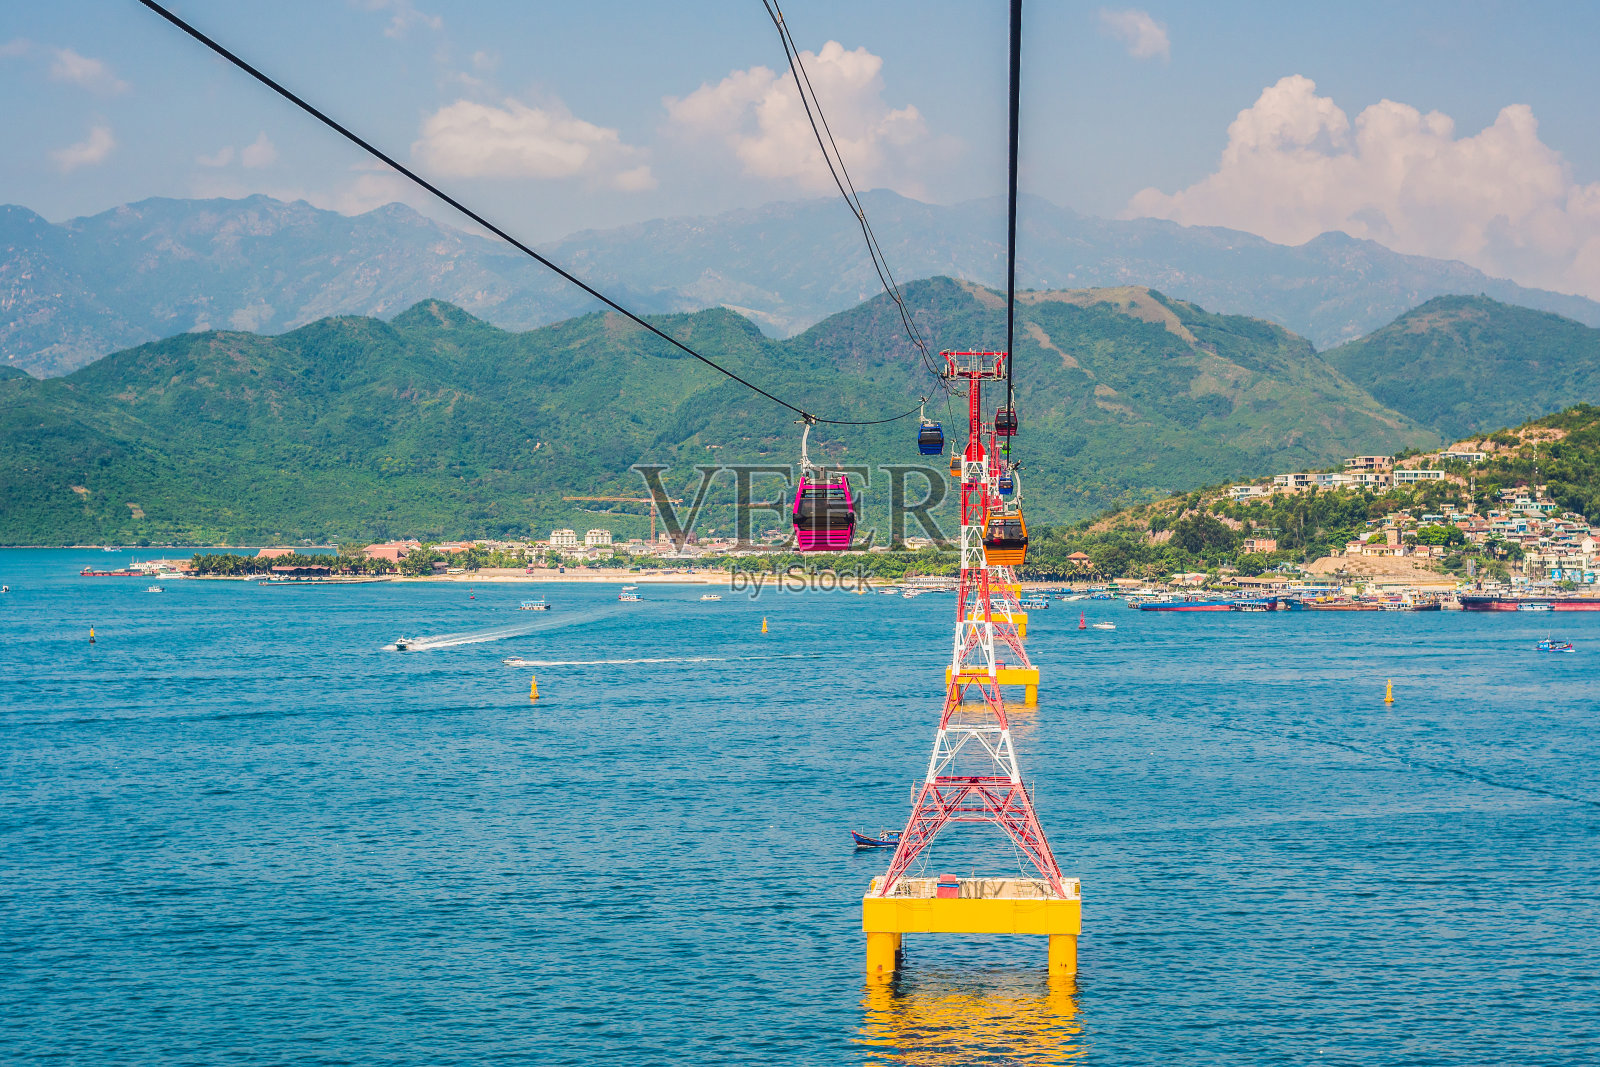 世界上最长的海上缆车之一，通往越南芽庄的Vinpearl游乐园照片摄影图片